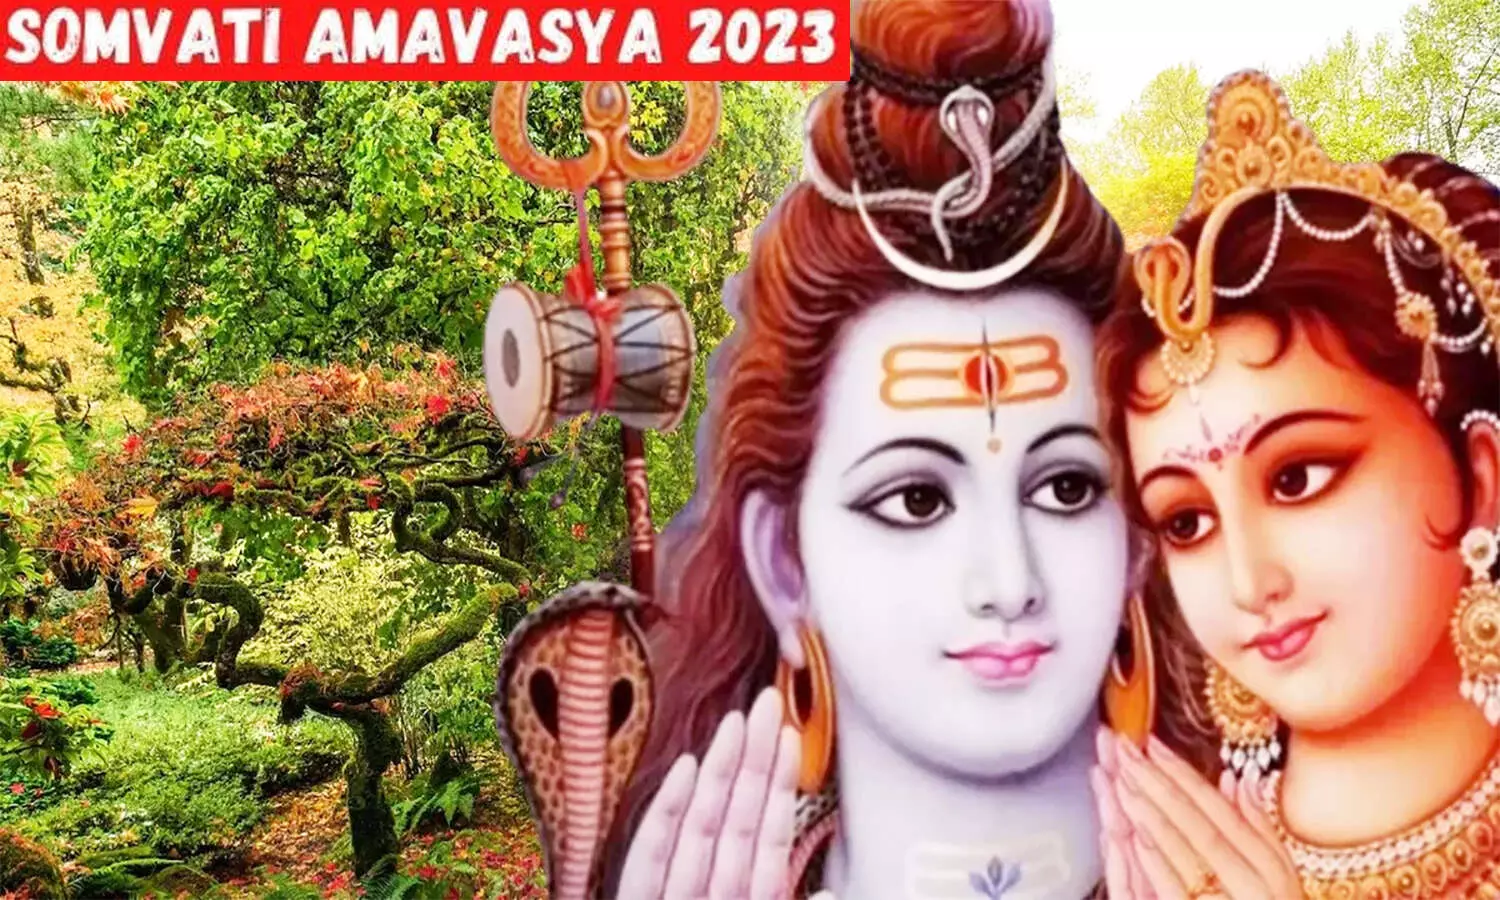 Somvati Amavasya 2023: सोमवती अमावस्या कल, भगवान शिव की आराधना विशेष फलदायी, बन जाएंगे बिगड़े काम